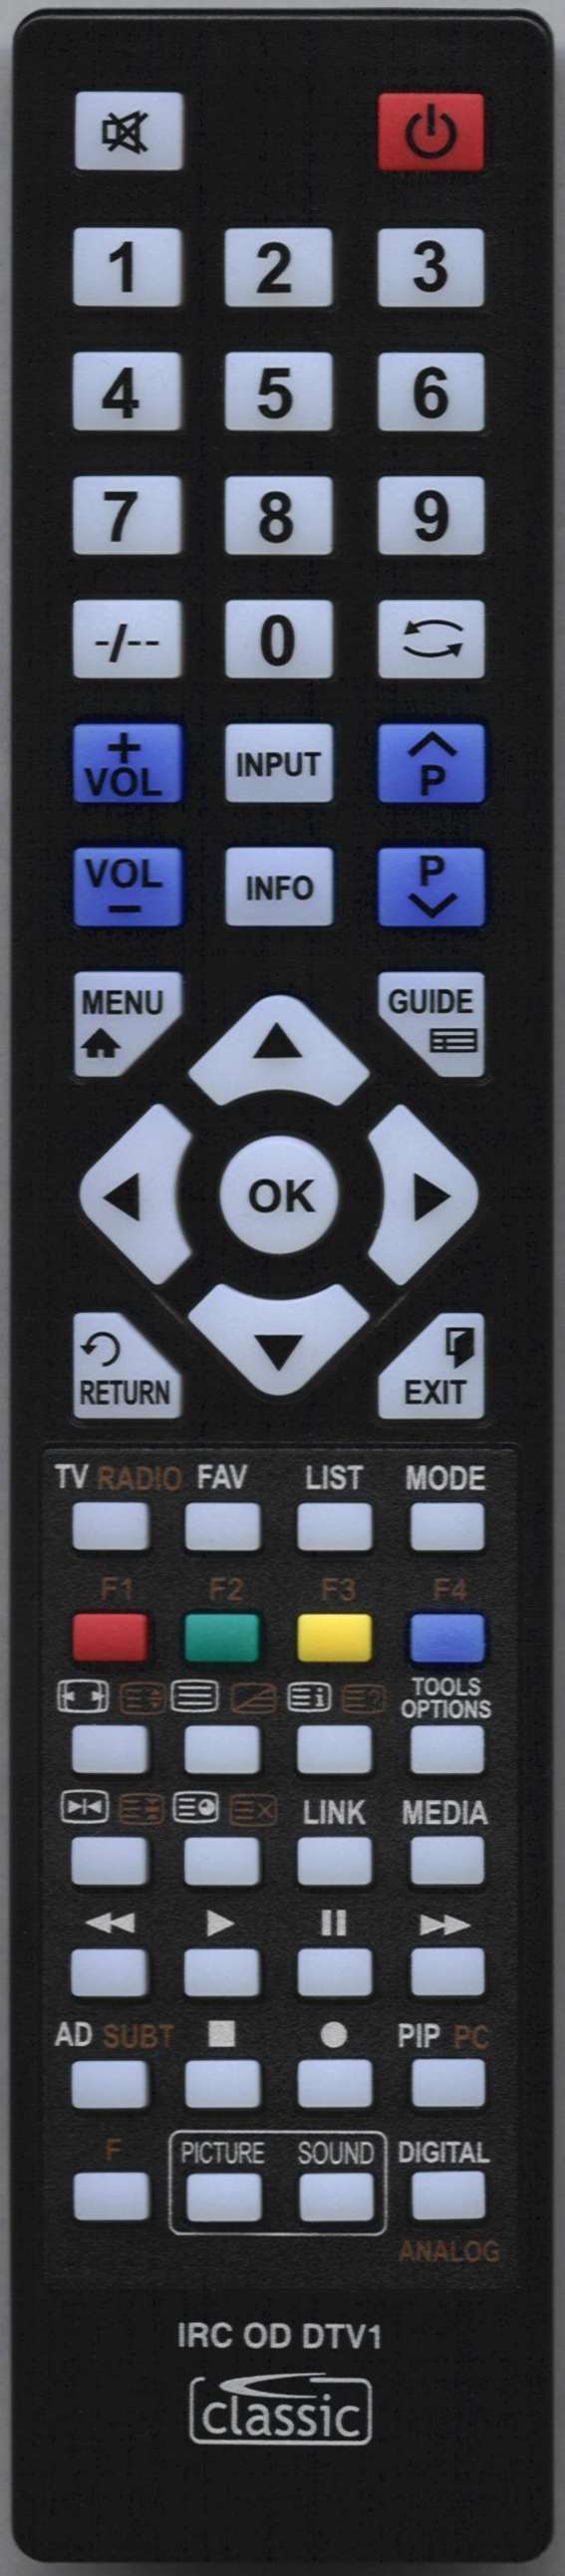 TECHNIKA LCD24-620 Remote Control